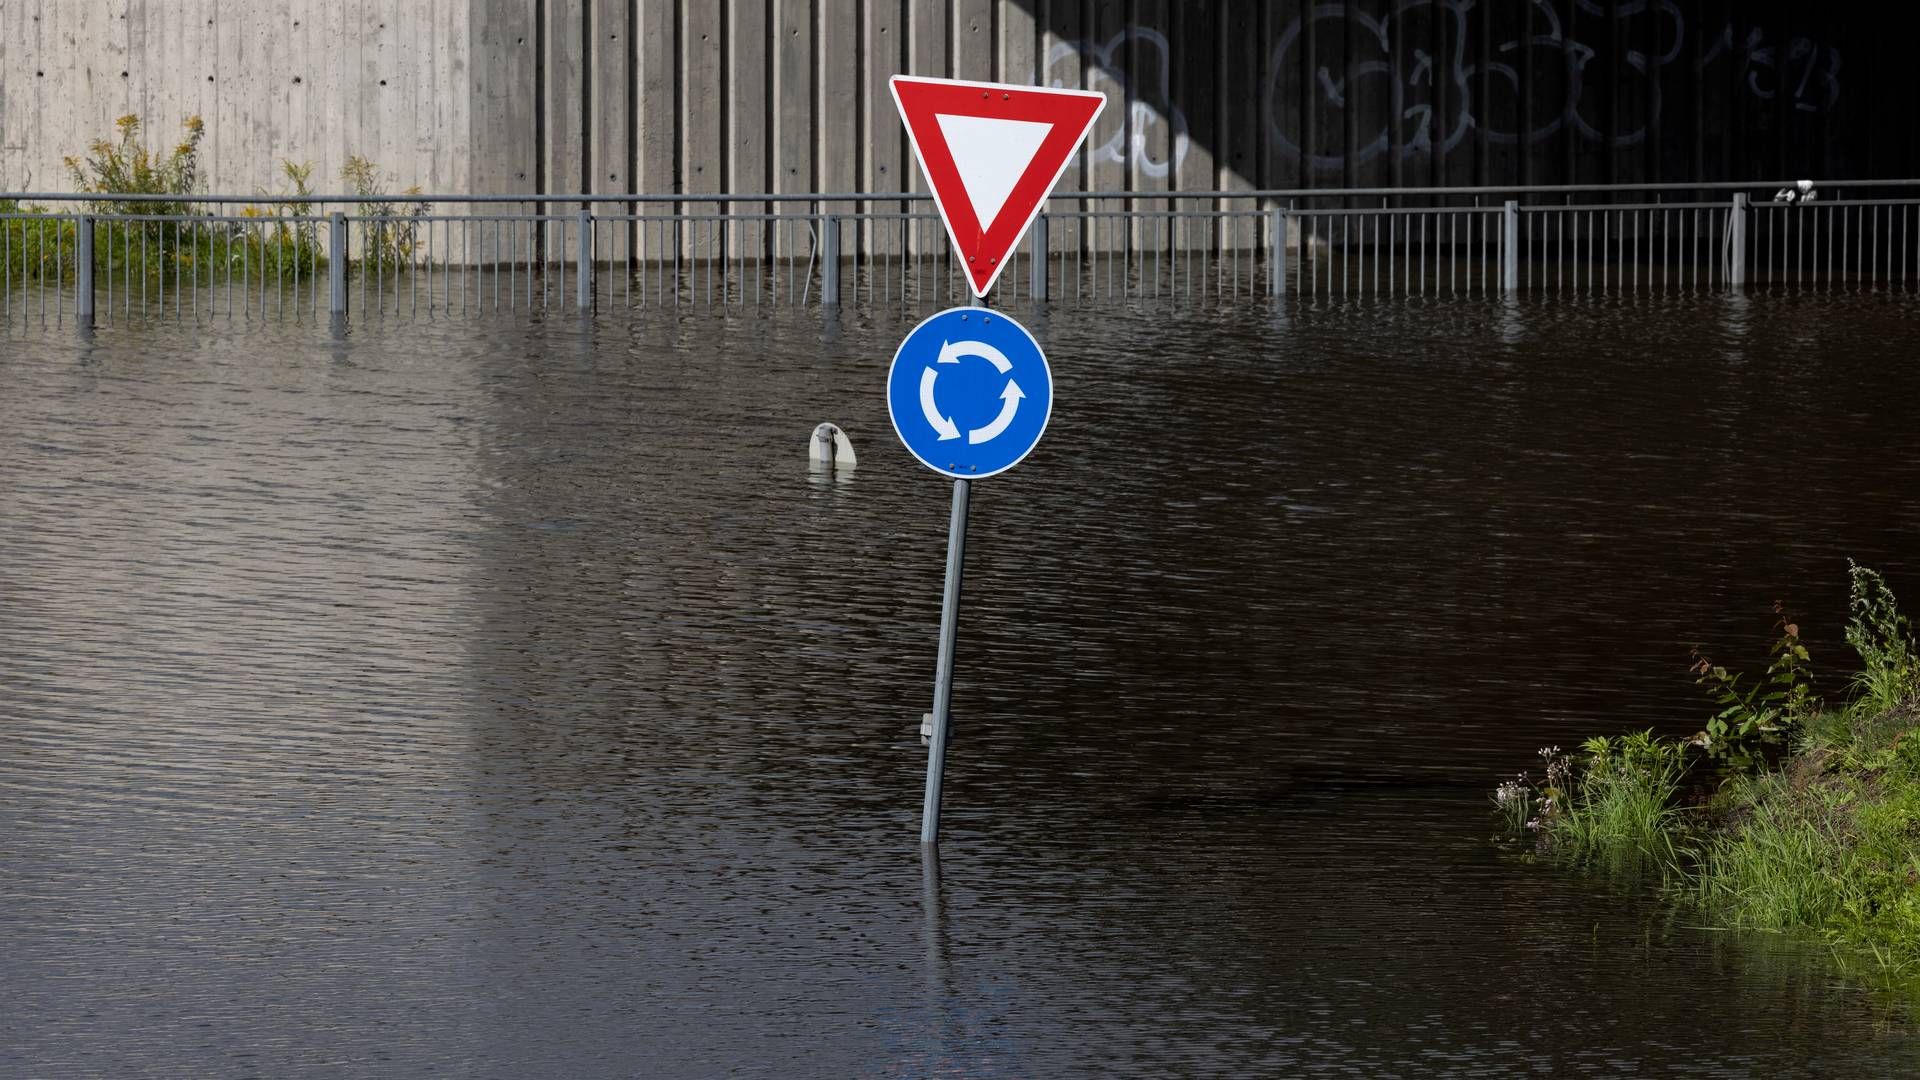 I Flensted, 20 kilometer vest for Aarhus, er der faldet 70 millimeter regn. Normalt falder der 83 millimeter regn i Danmark i hele oktober. | Foto: Jacob Ehrbahn